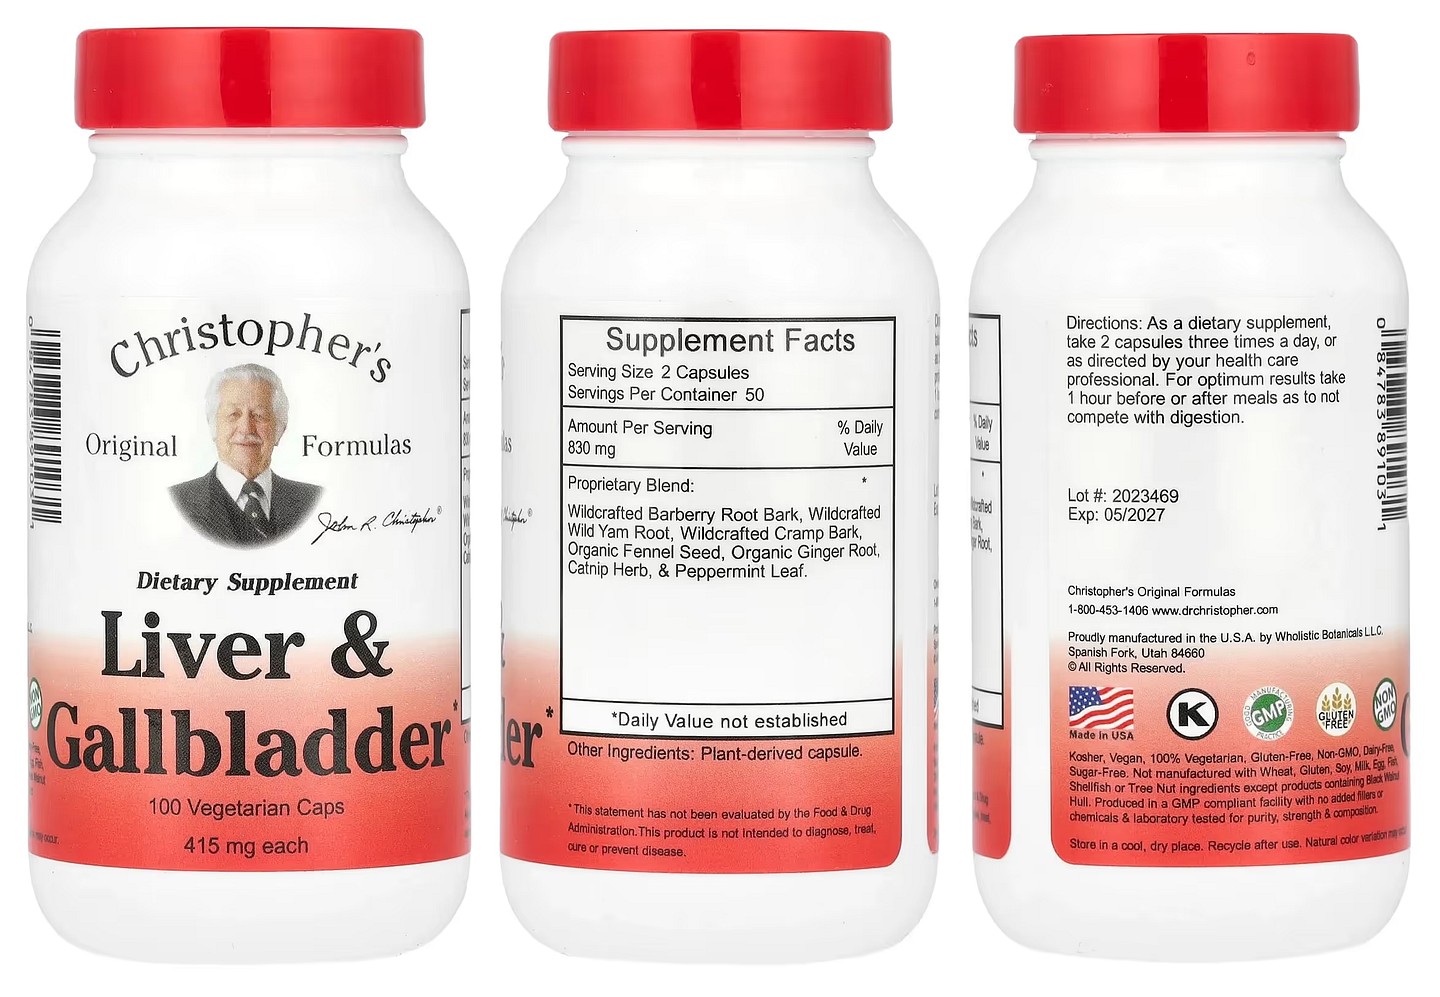 Christopher's Original Formulas, Liver & Gallbladder packaging